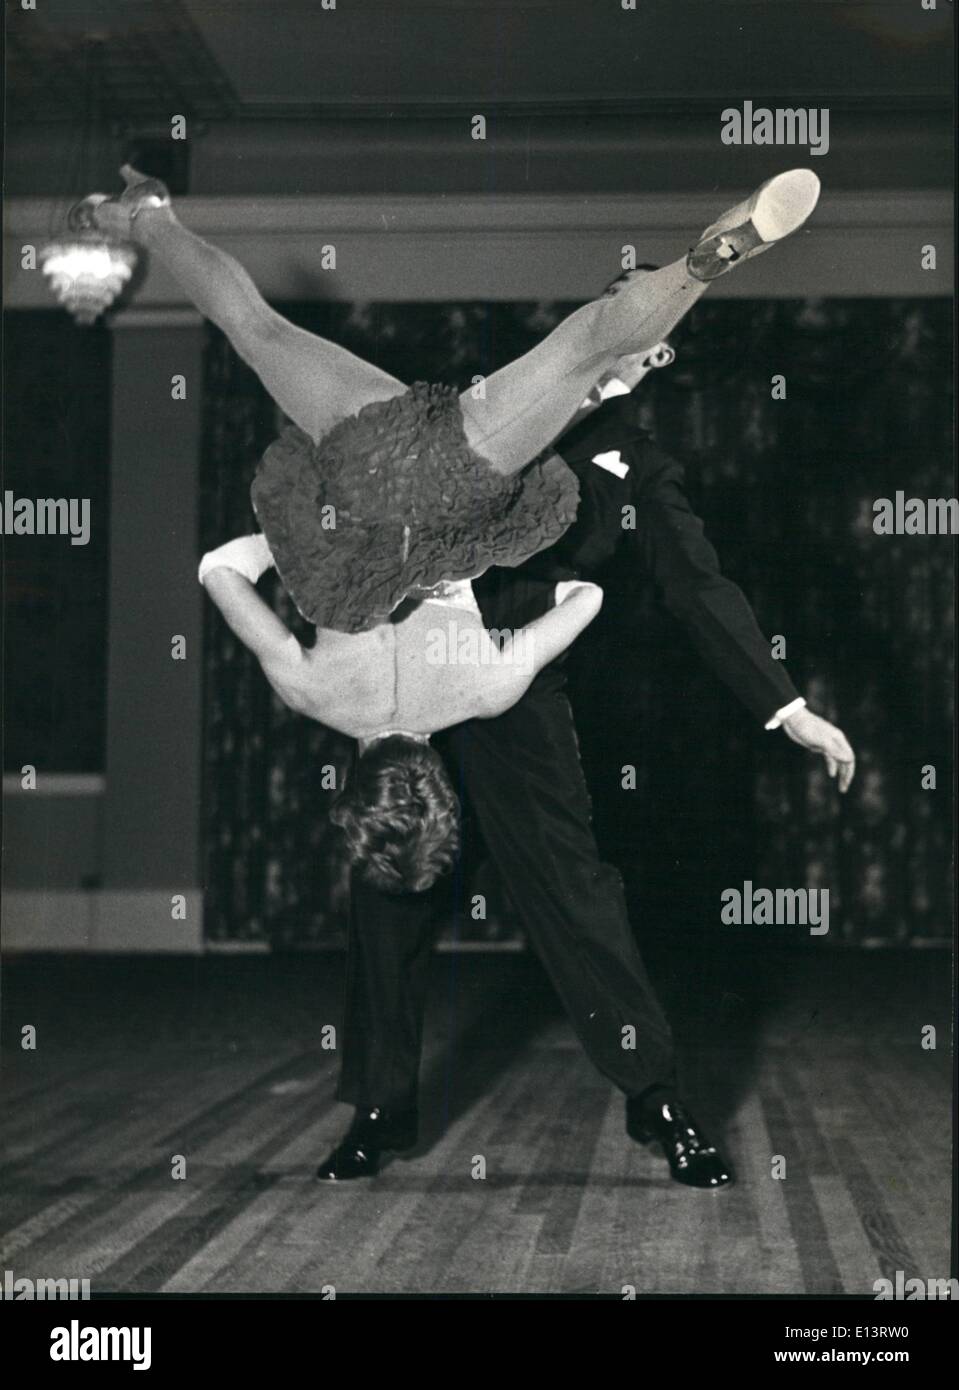 27 mar 2012 - Il retro di Patricia la testa è visibile, ma Neil è nascosto dalla vista come egli lanci di sua moglie in un turno di spin, durante la loro danza. Foto Stock